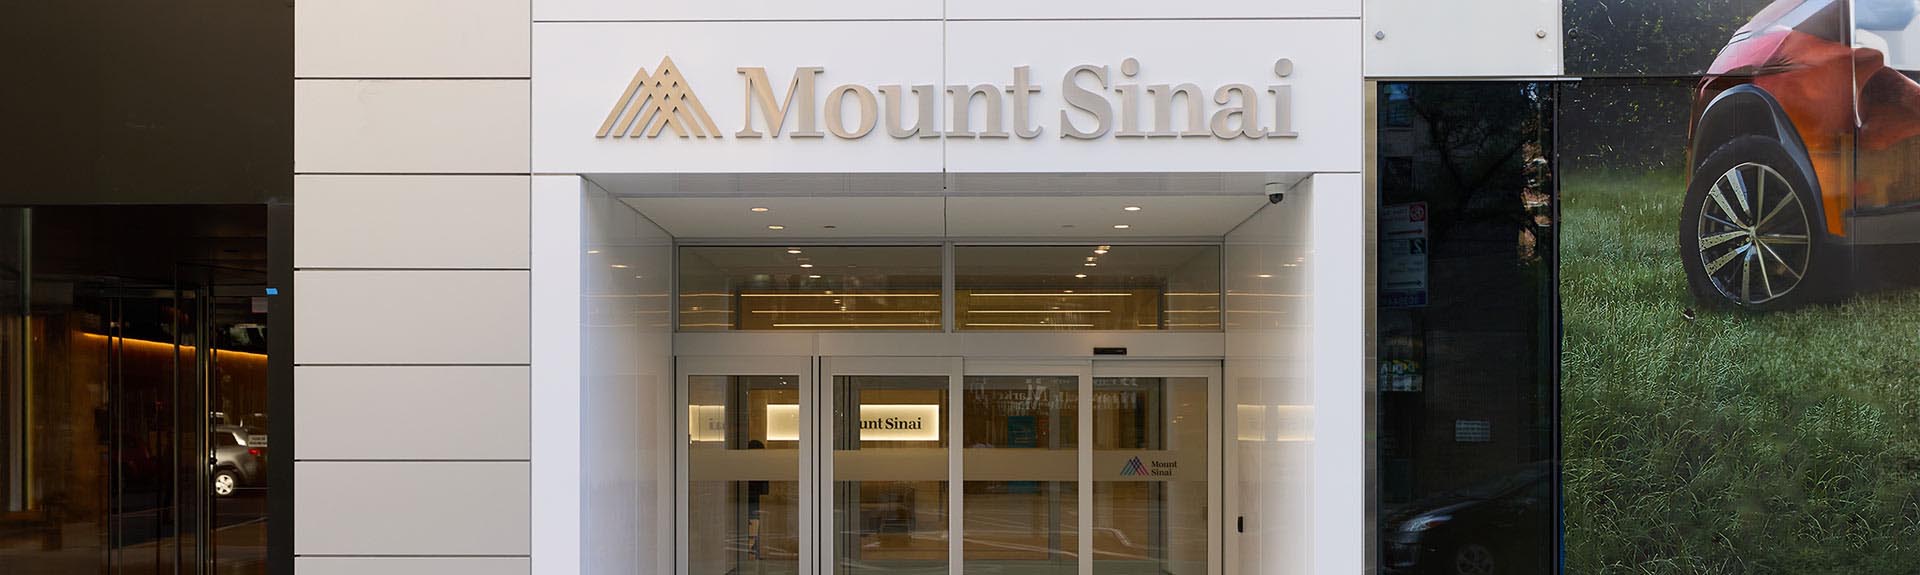 Open Closure Bra (Various Sizes) – The Sinai Shop - Mount Sinai Hospital